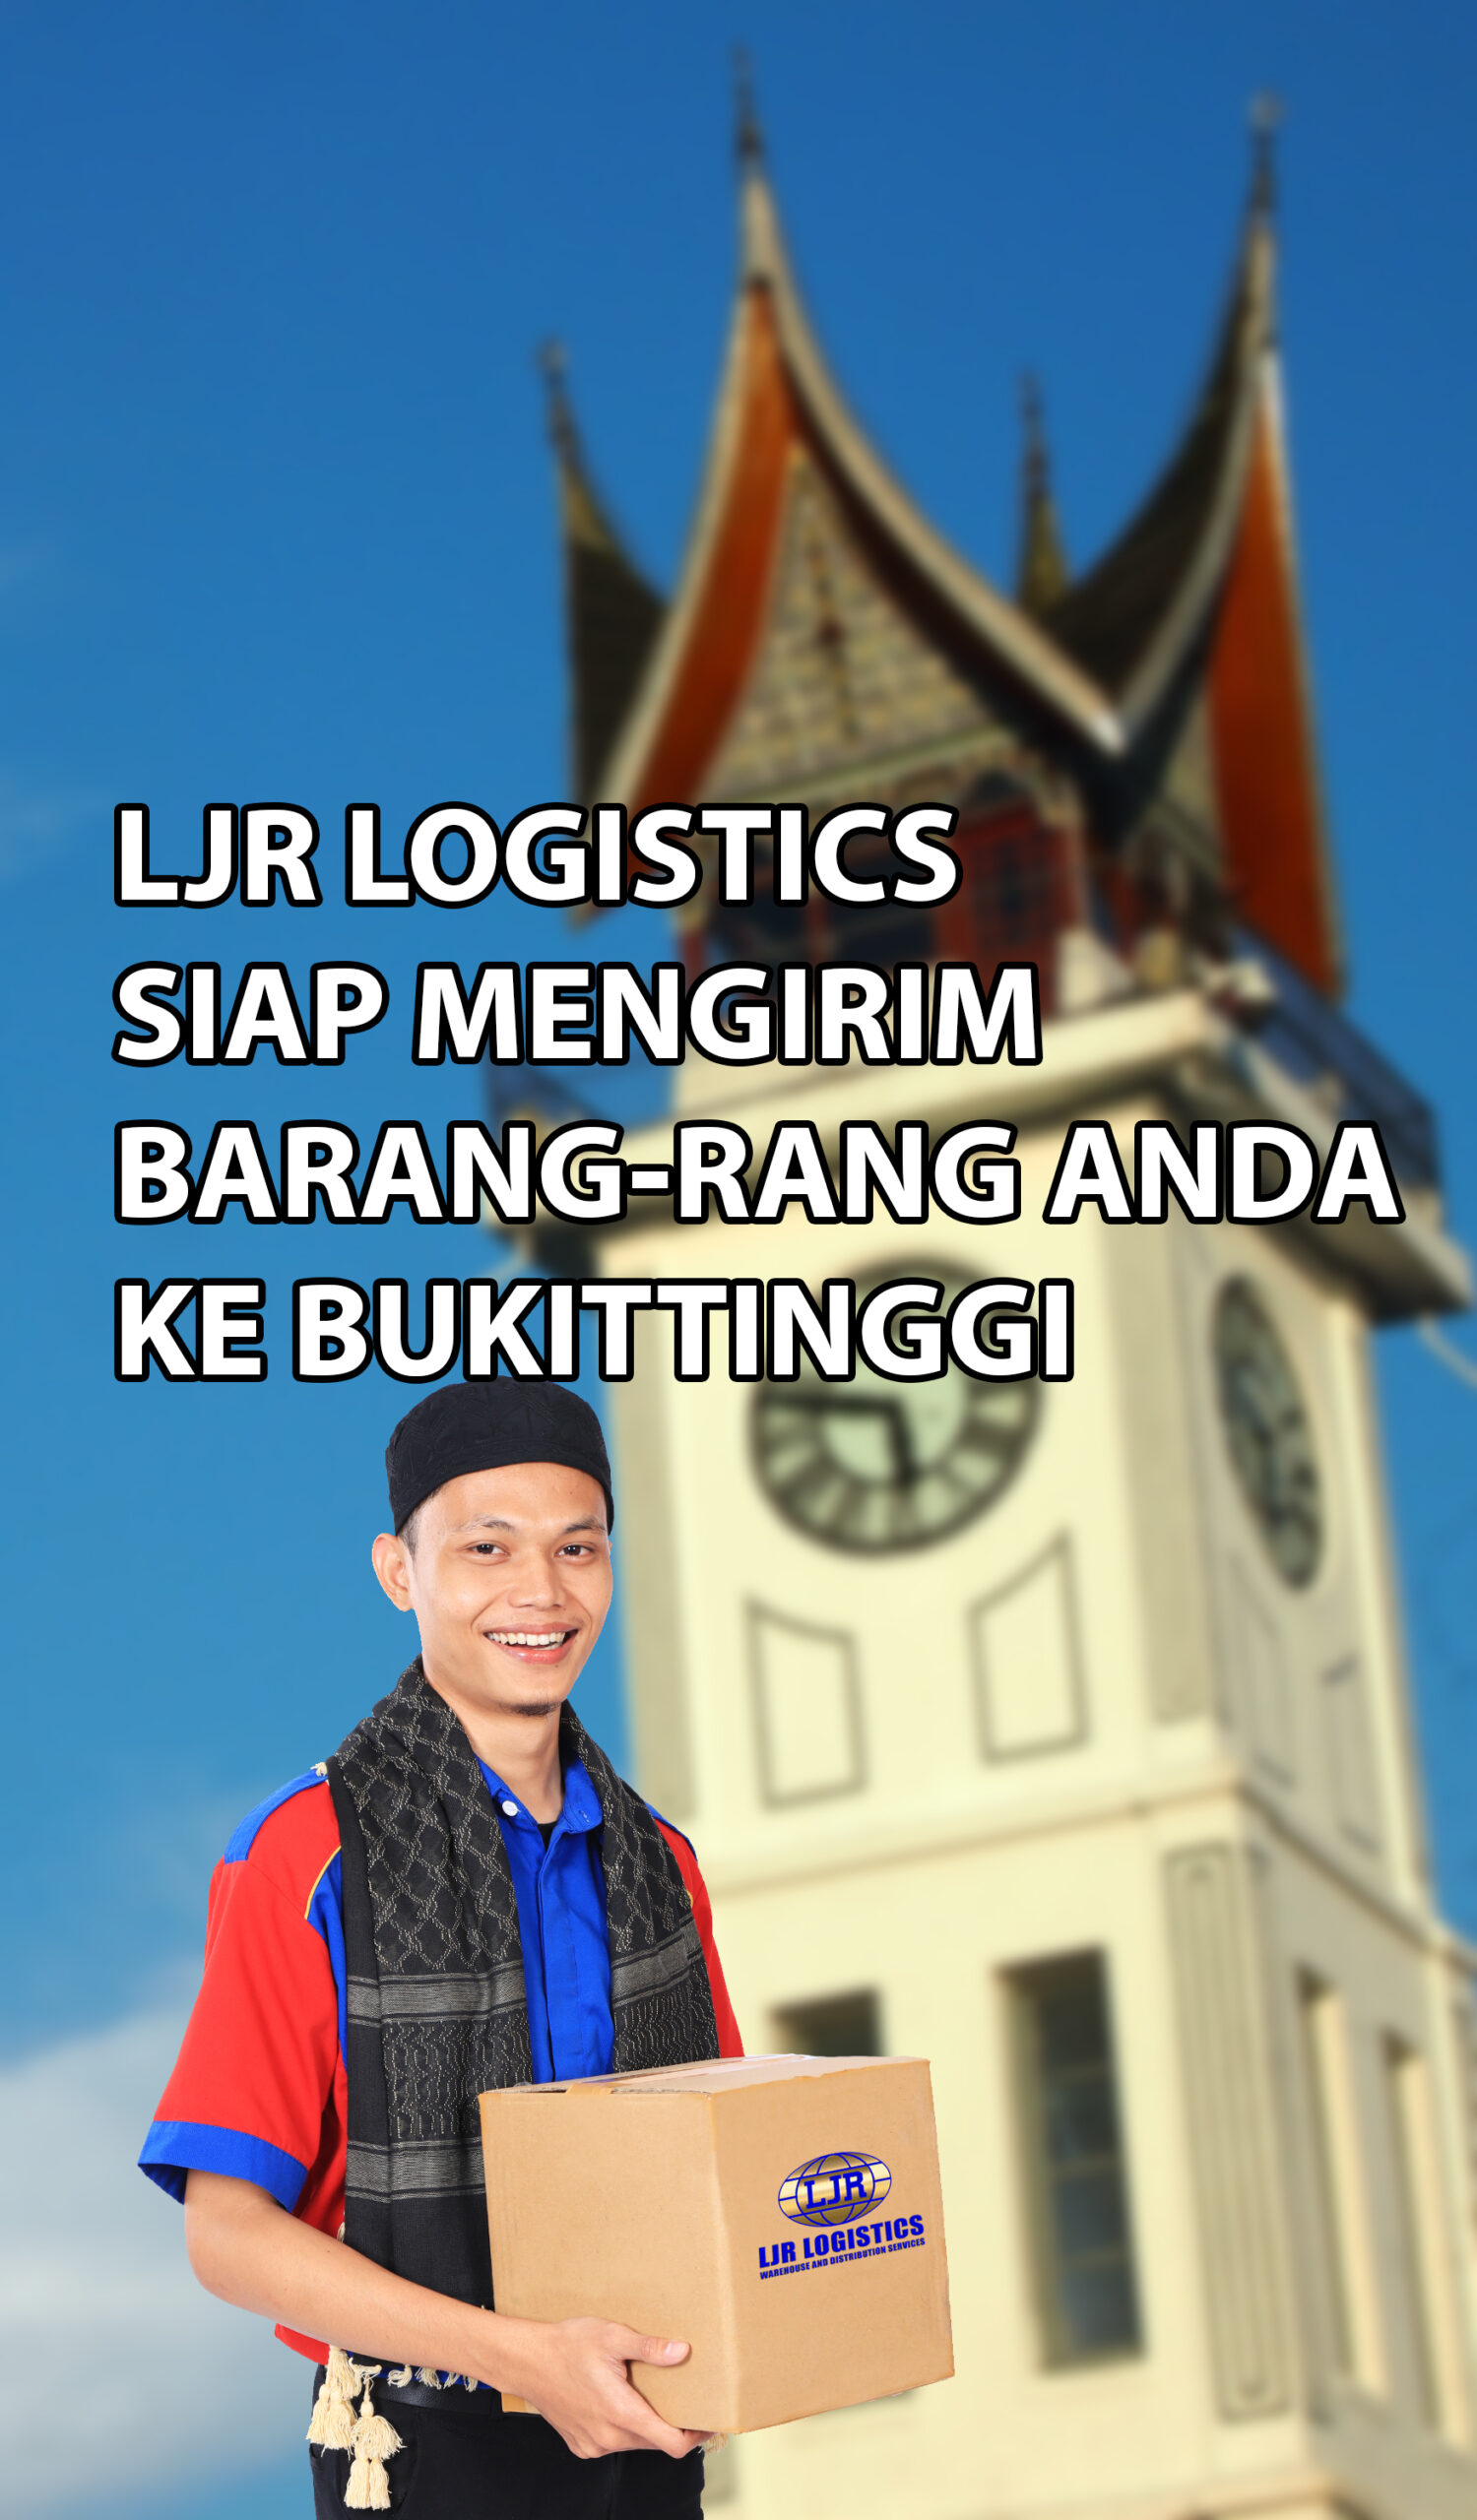 LJR Logistics siap mengirim barang ke Bukittinggi